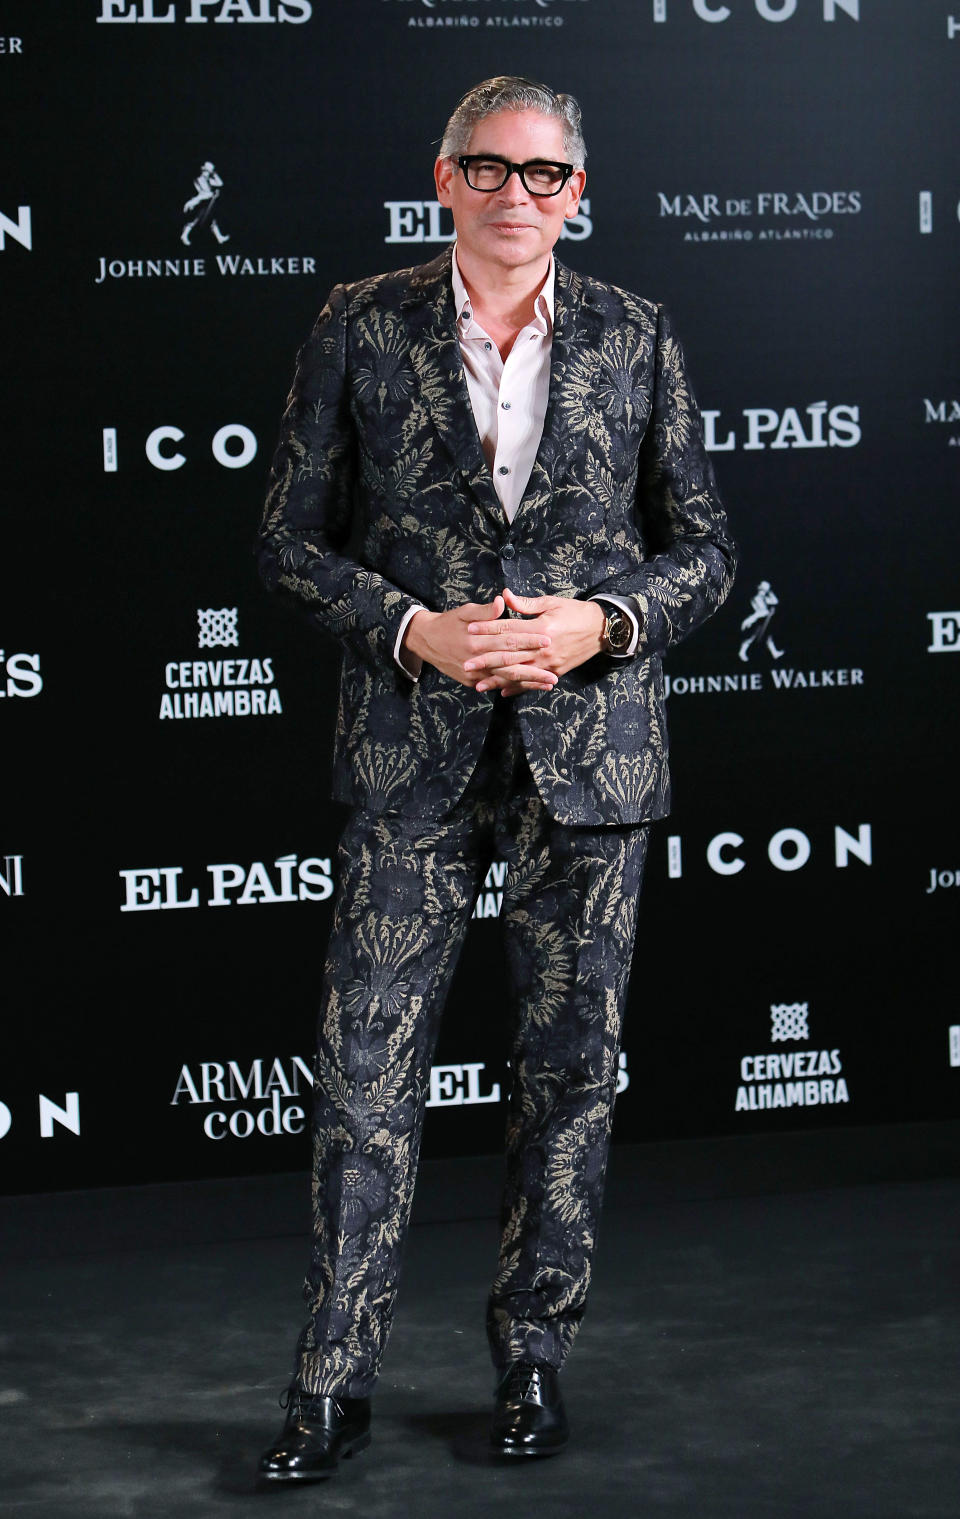 La gala fue presentada por un Boris Izaguirre que presumió de estilazo con un original traje estampado. (Foto: Europa Press Entertainment / Getty Images)